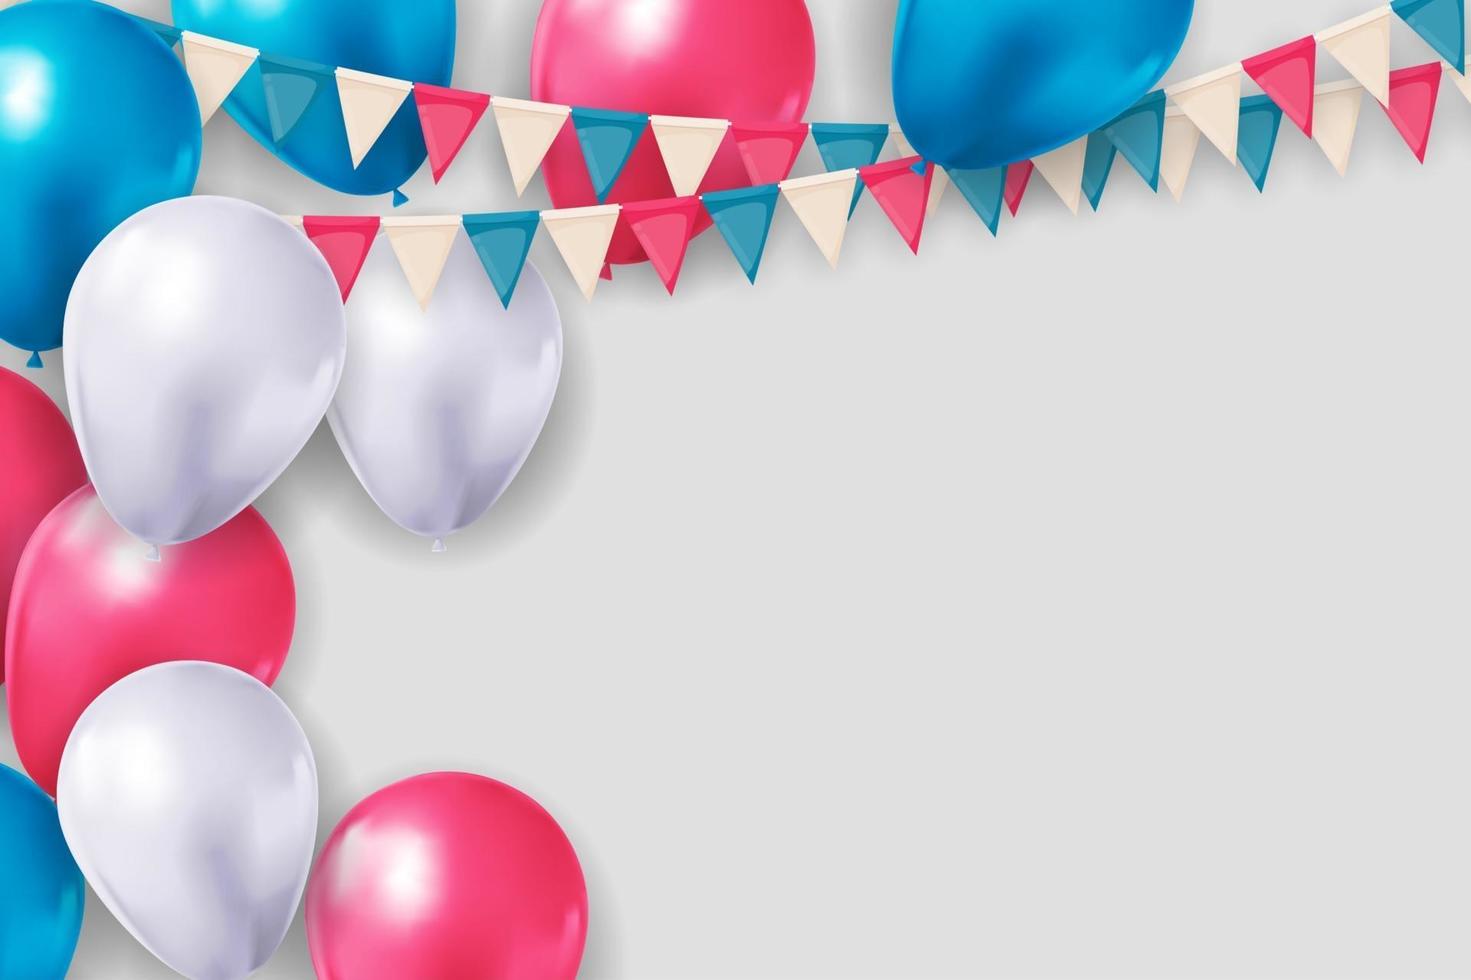 realistischer 3d Ballonhintergrund für Partei, Feiertag, Geburtstag, Werbekarte, Plakat. Vektorillustration eps10 vektor